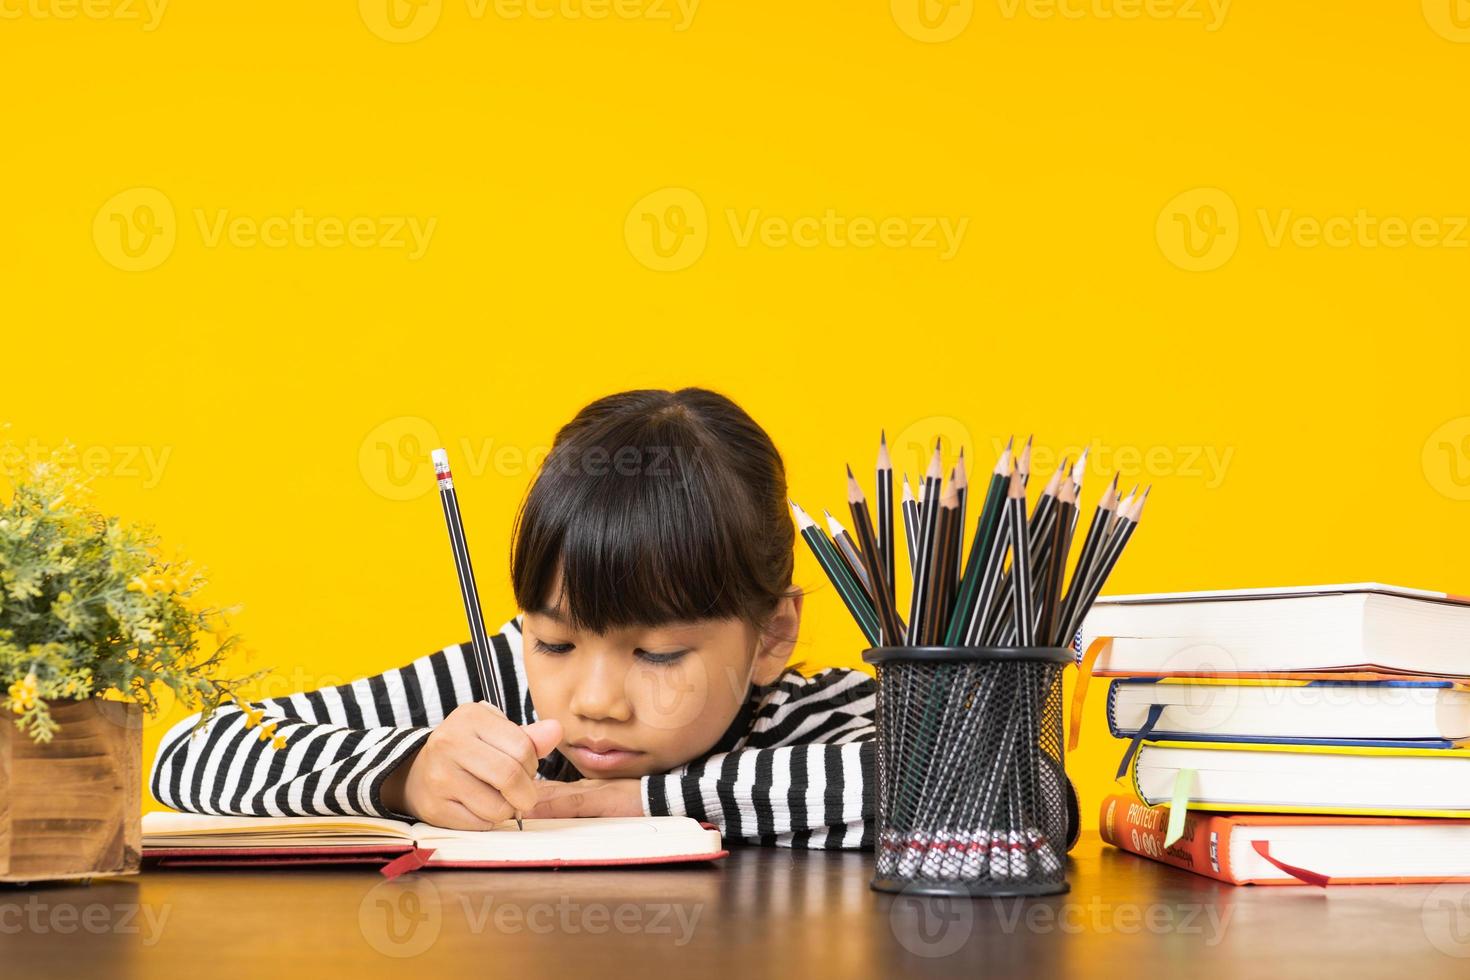 Jeune fille asiatique écrivant dans un cahier à côté de pile de livres, tasse de crayons et fleurs avec fond jaune photo